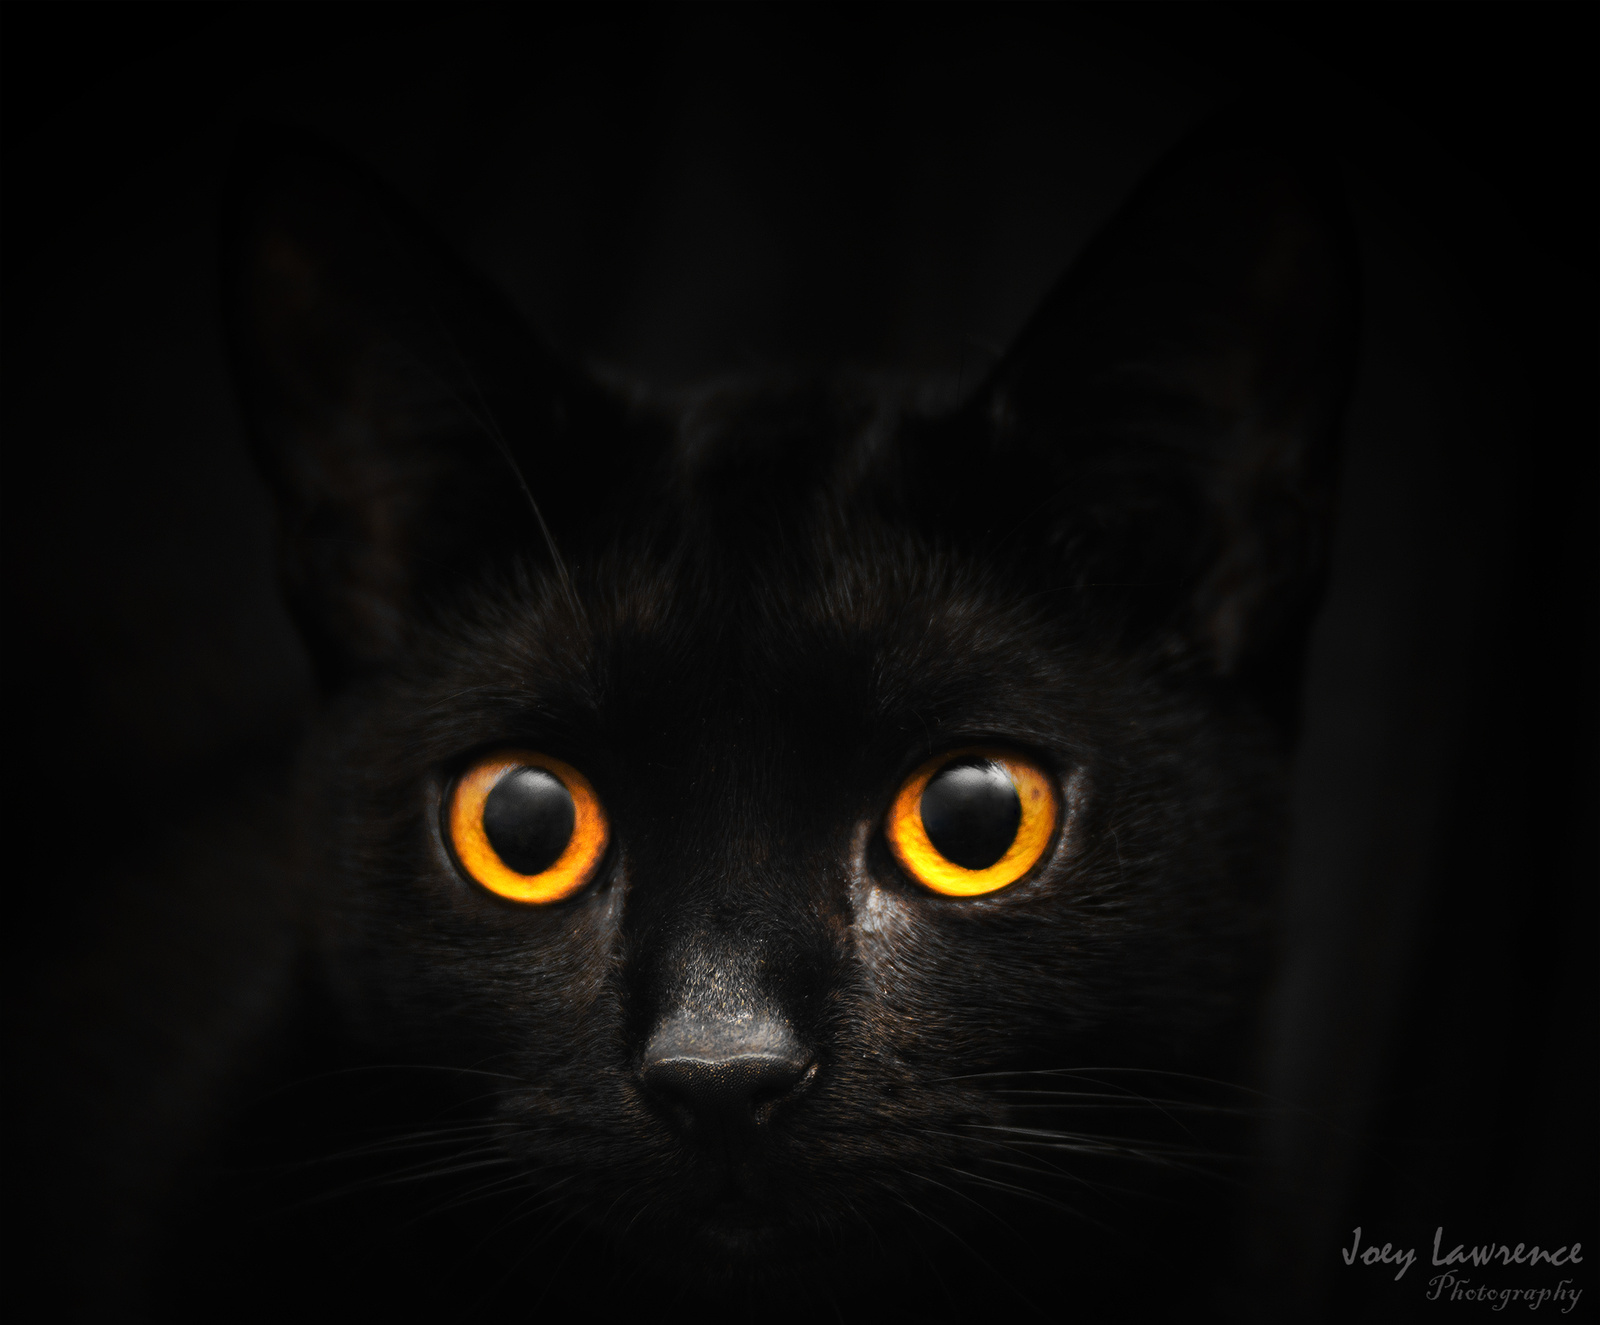 Joey Lawrence: Cat eyes